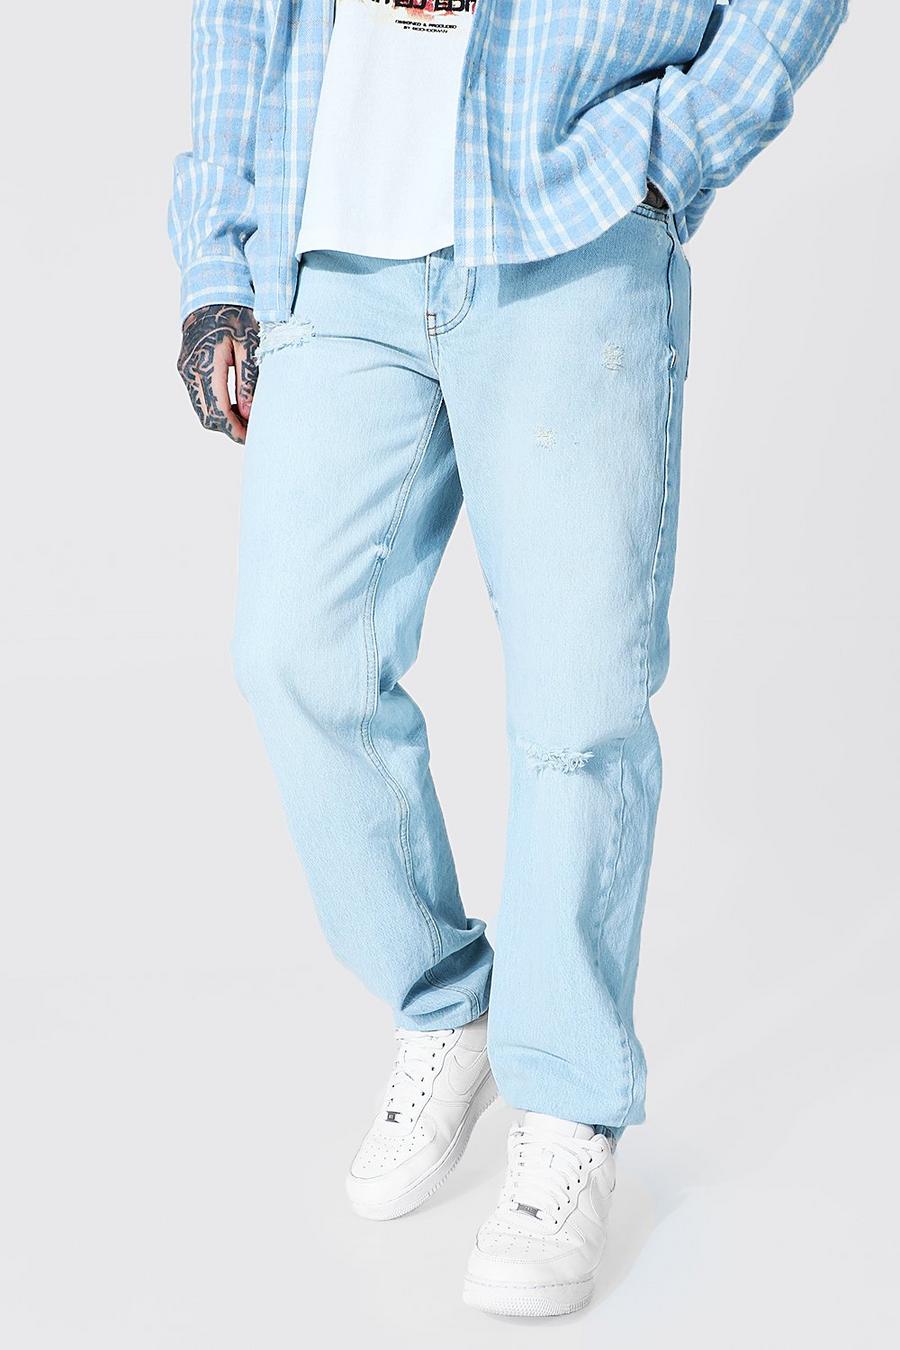 כחול קרח ג'ינס מבד קשיח בגזרה משוחררת עם שסעים בברכיים